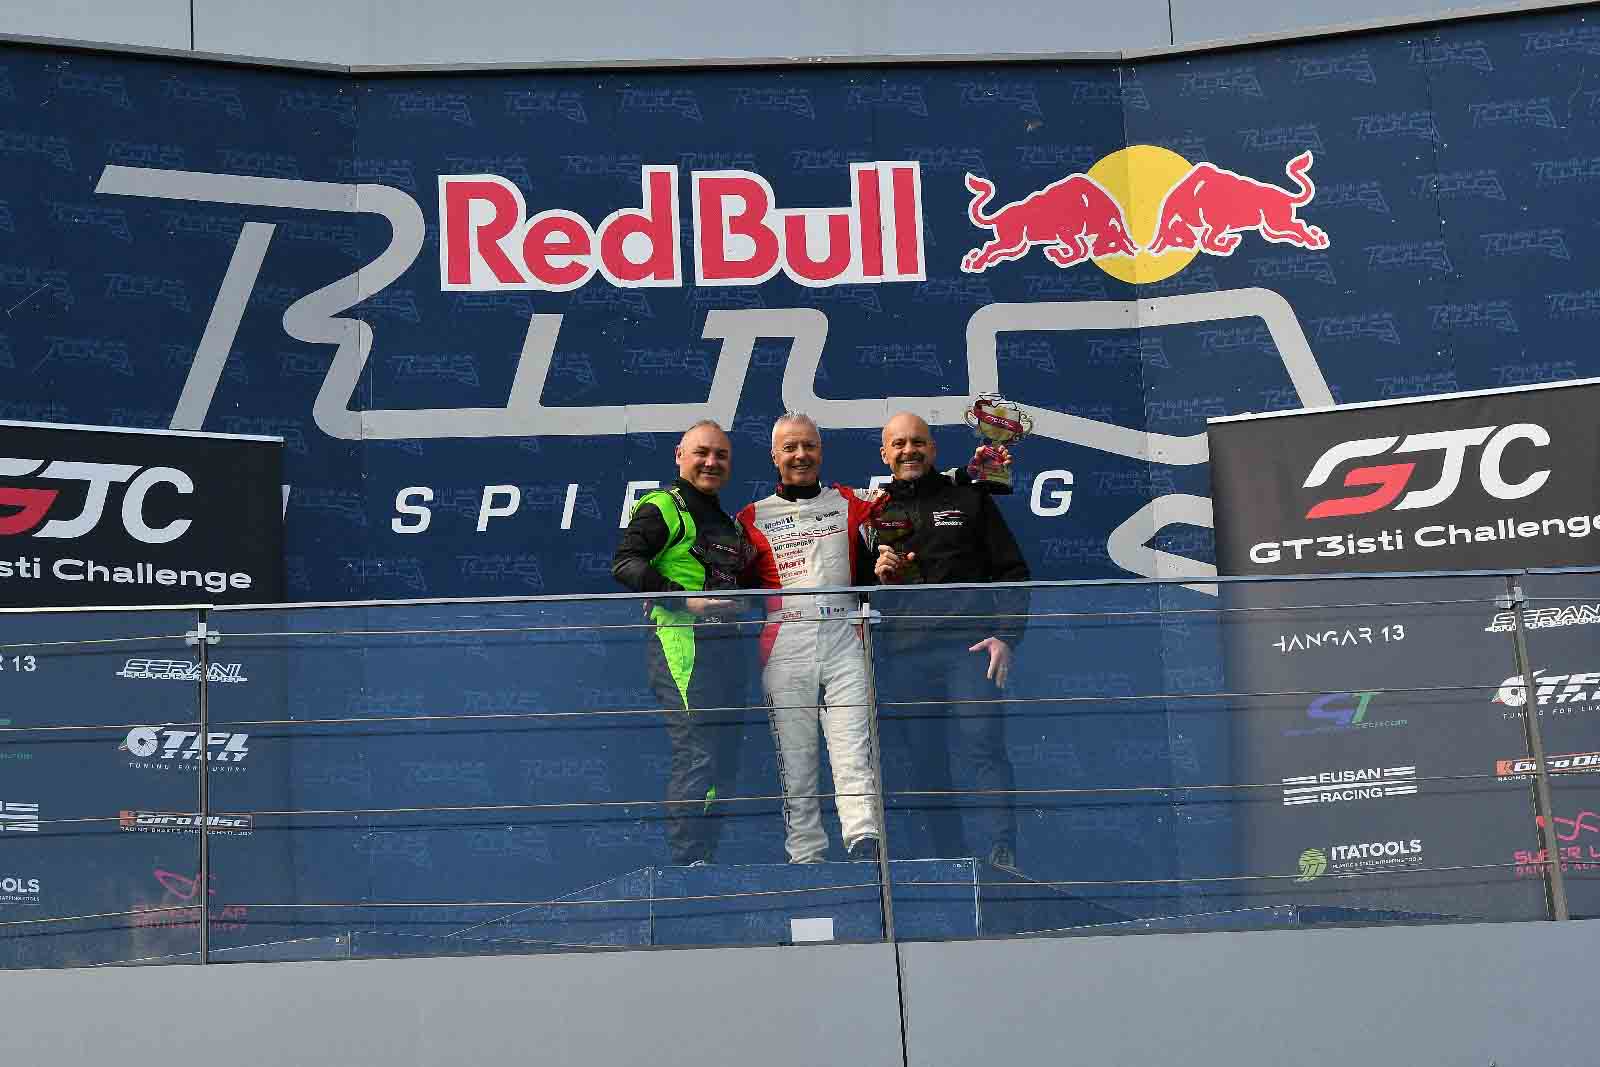 GT3isti Challenge: Momenti di Alta Competizione alla Seconda Tappa del Campionato al Red Bull Ring